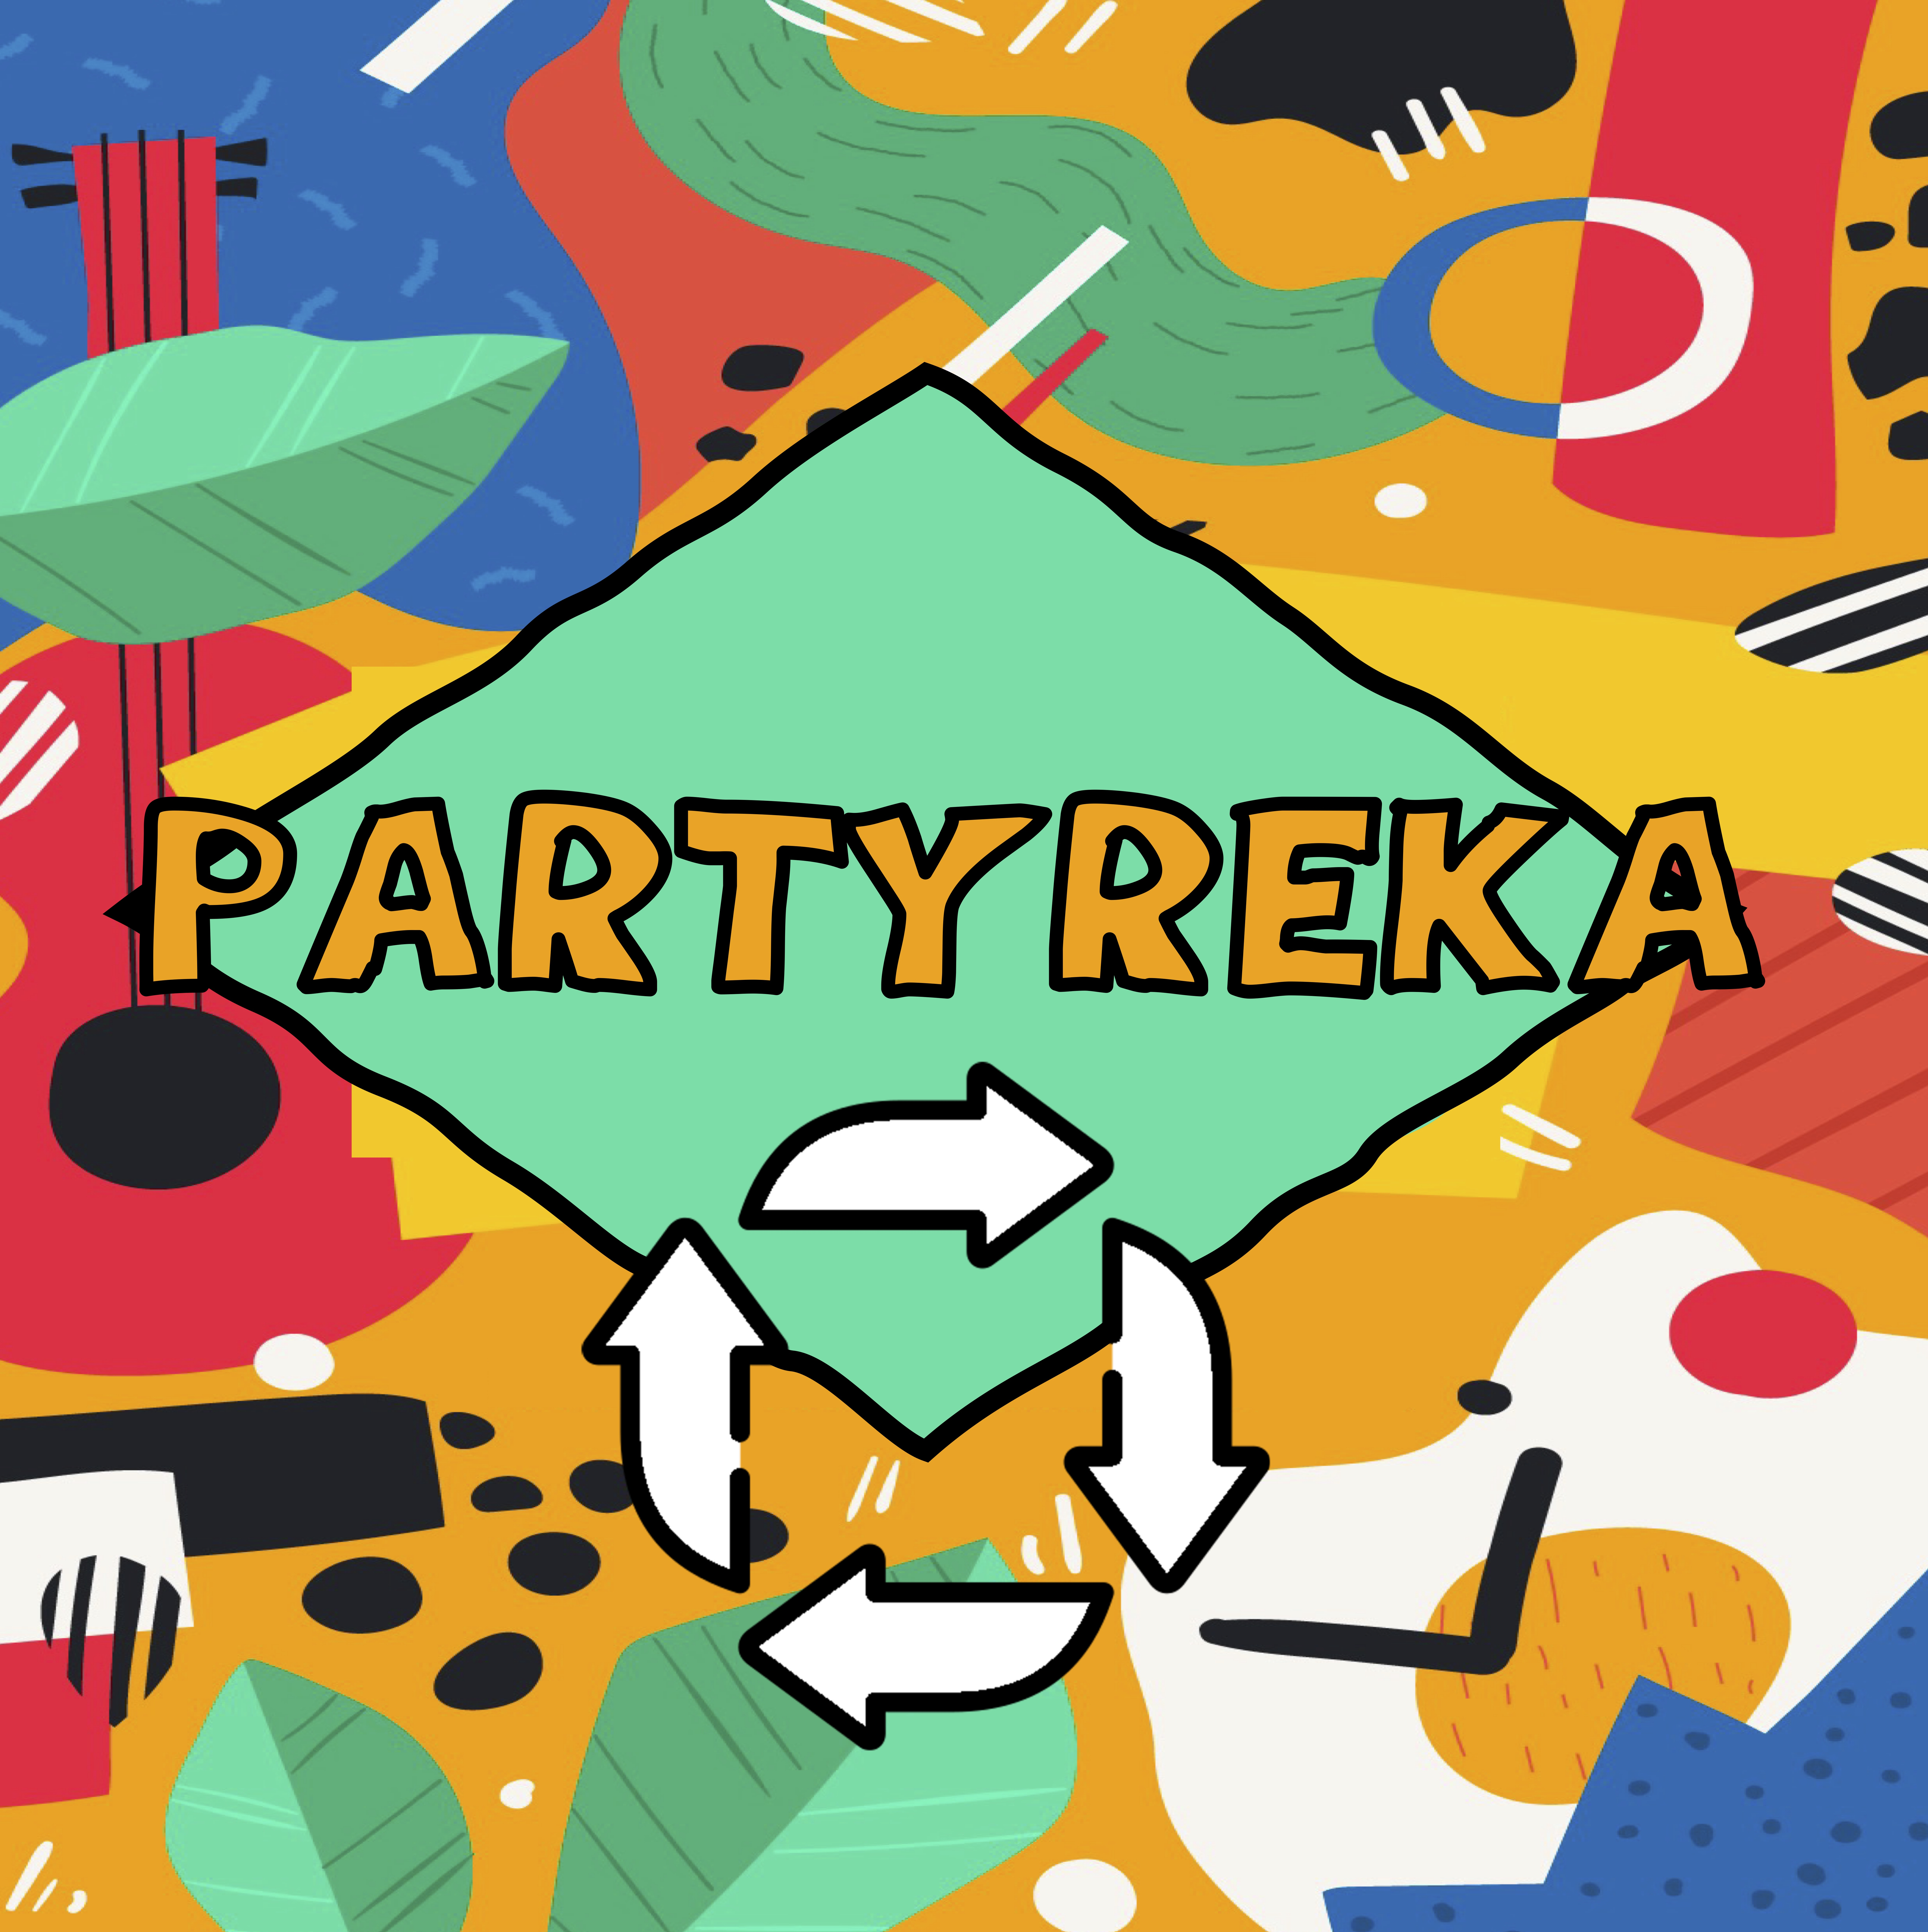 La imagen muestra una carta del Partyreka con cuatro flechas formando un círculo.